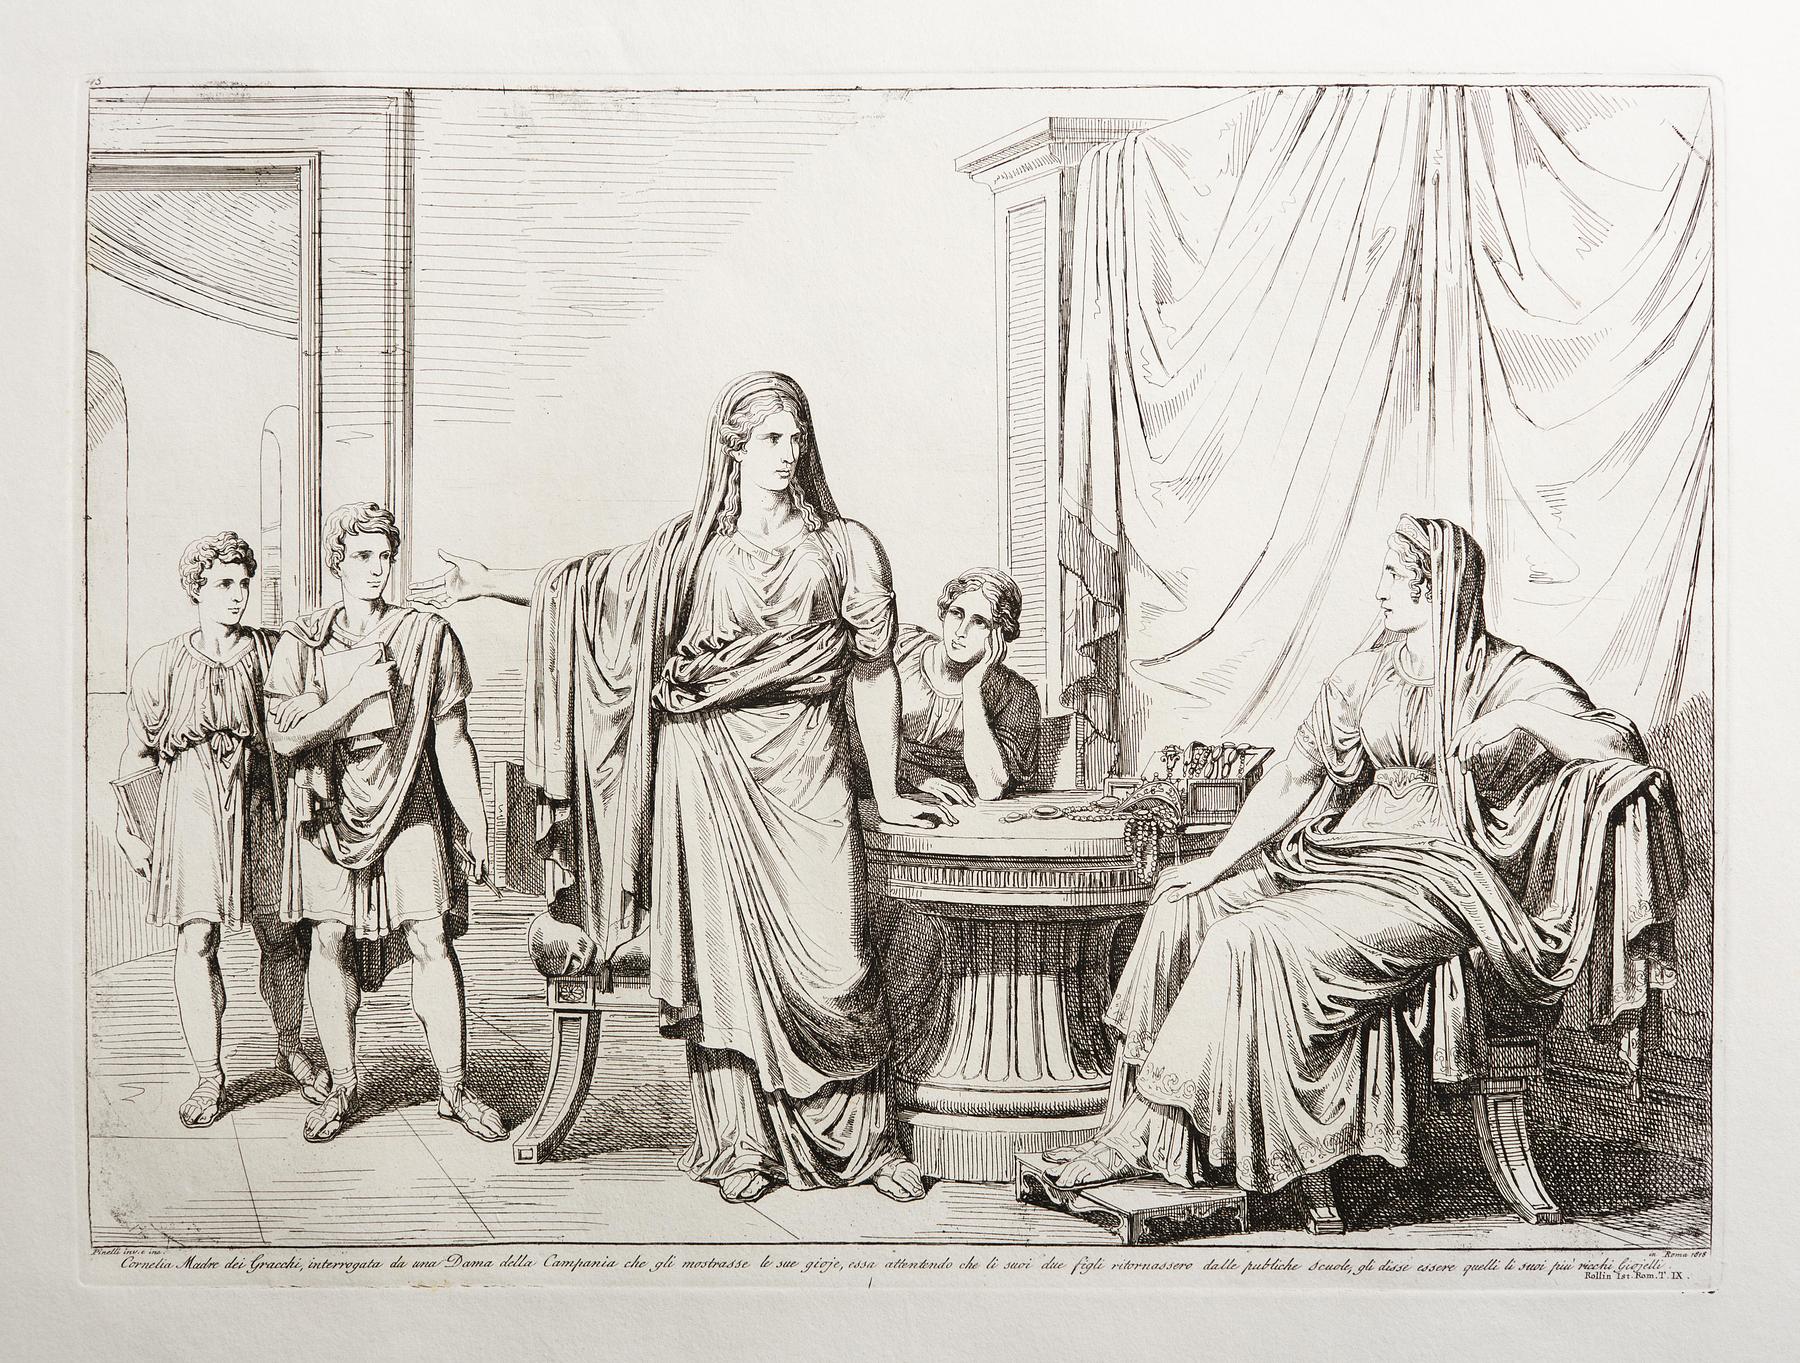 Cornelia Madre dei Gracchi, interrogate da una Dama della Campania che gli mostrasse le sua gioje, E943,70